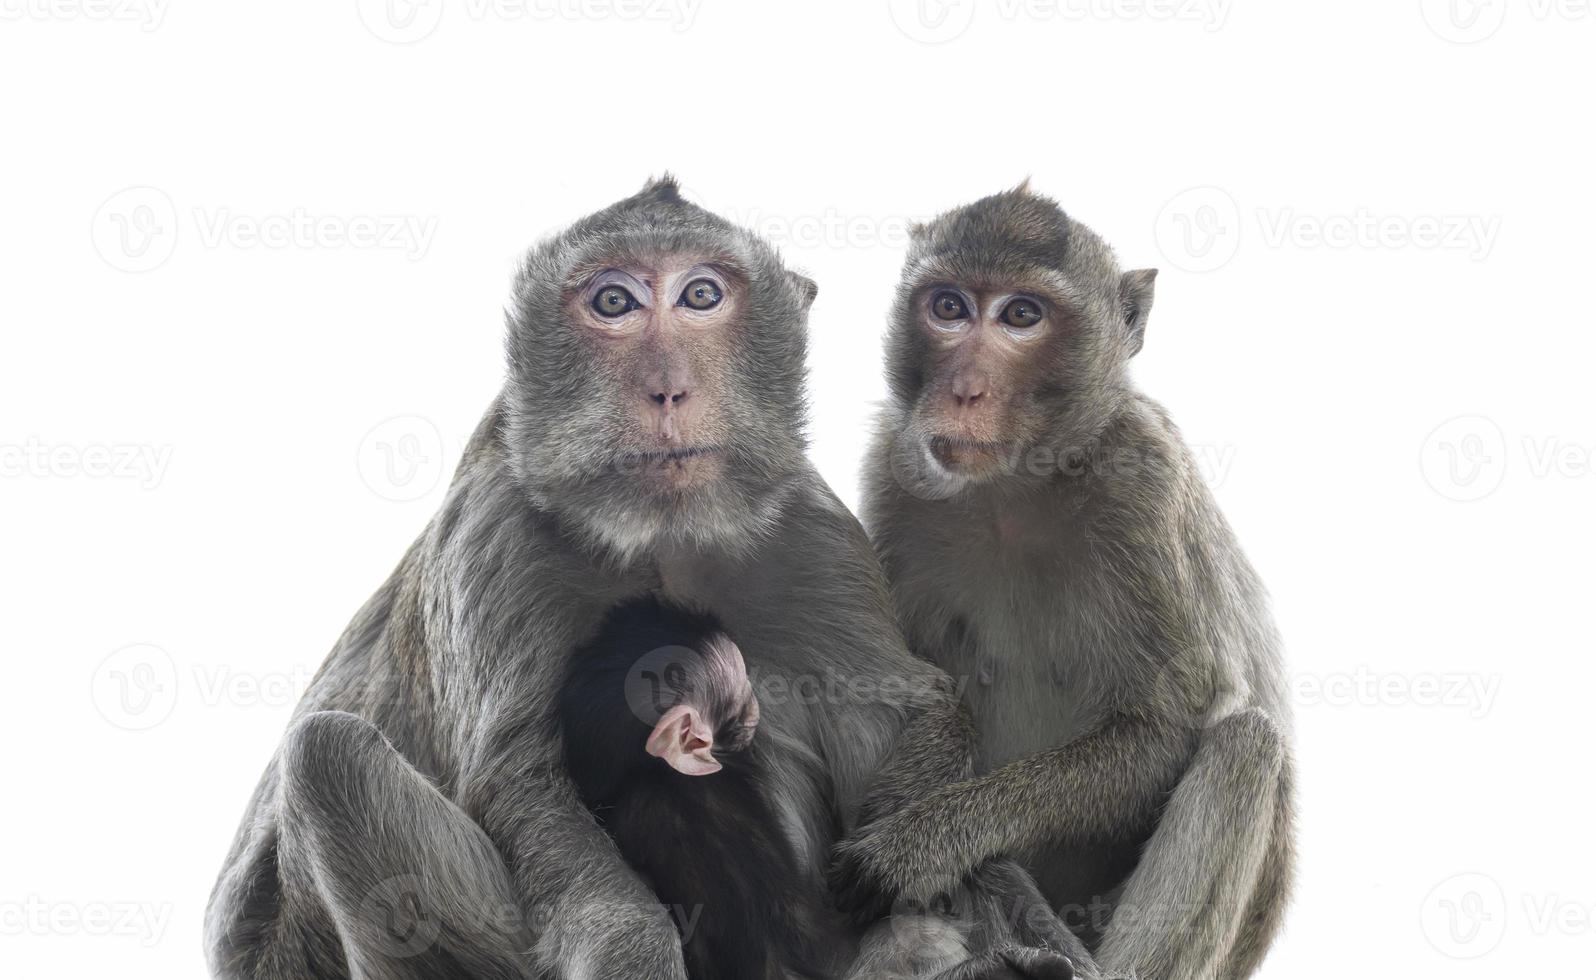 los padres monos, las madres monos y los monos bebés viven juntos como una familia. foto